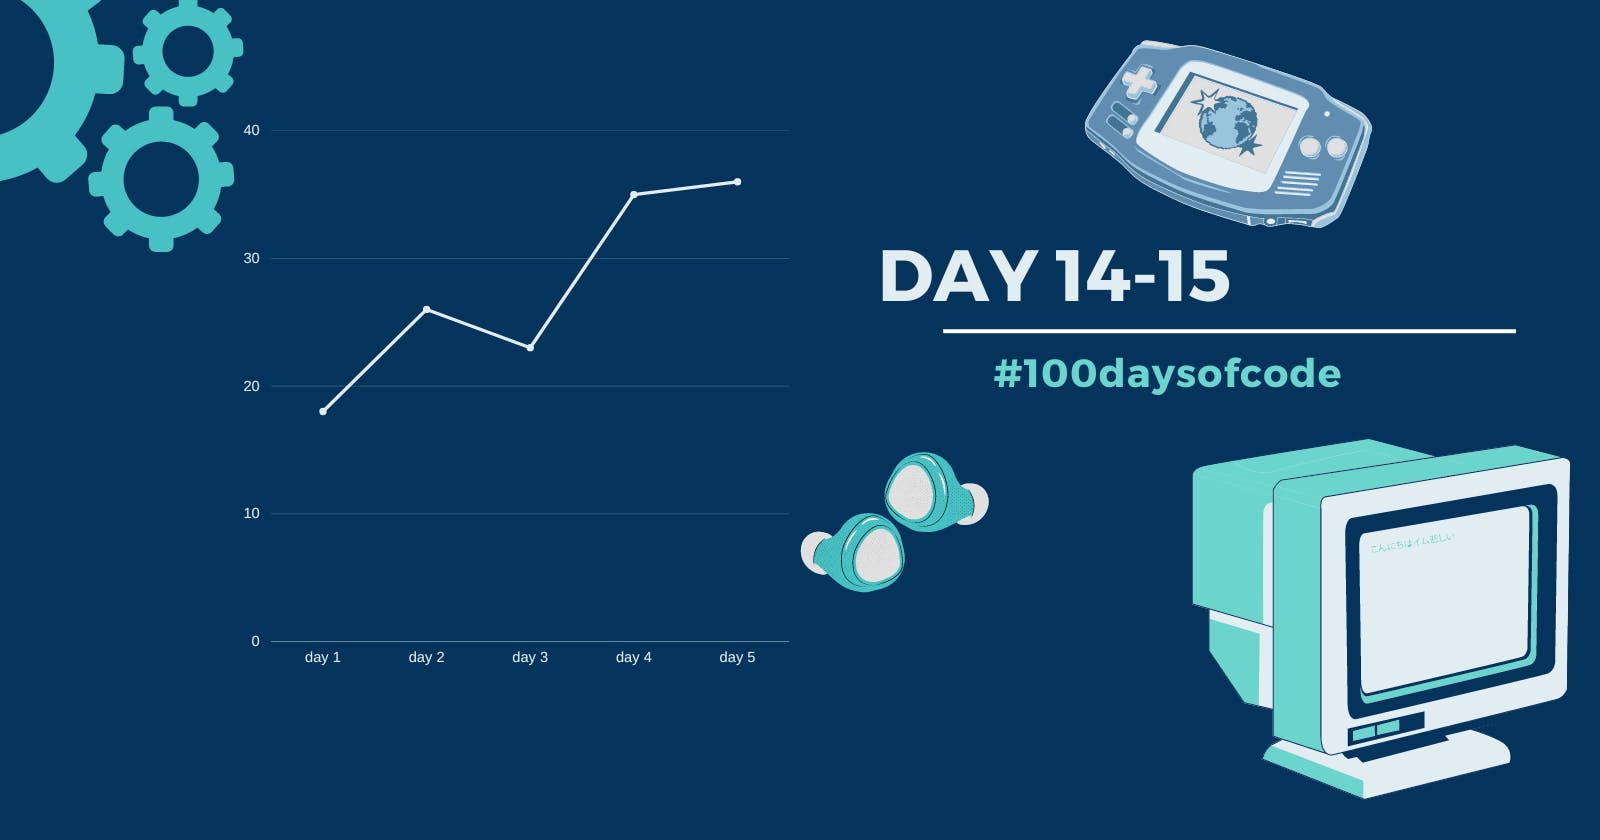 Day 14-15 in #100daysofcode challenge